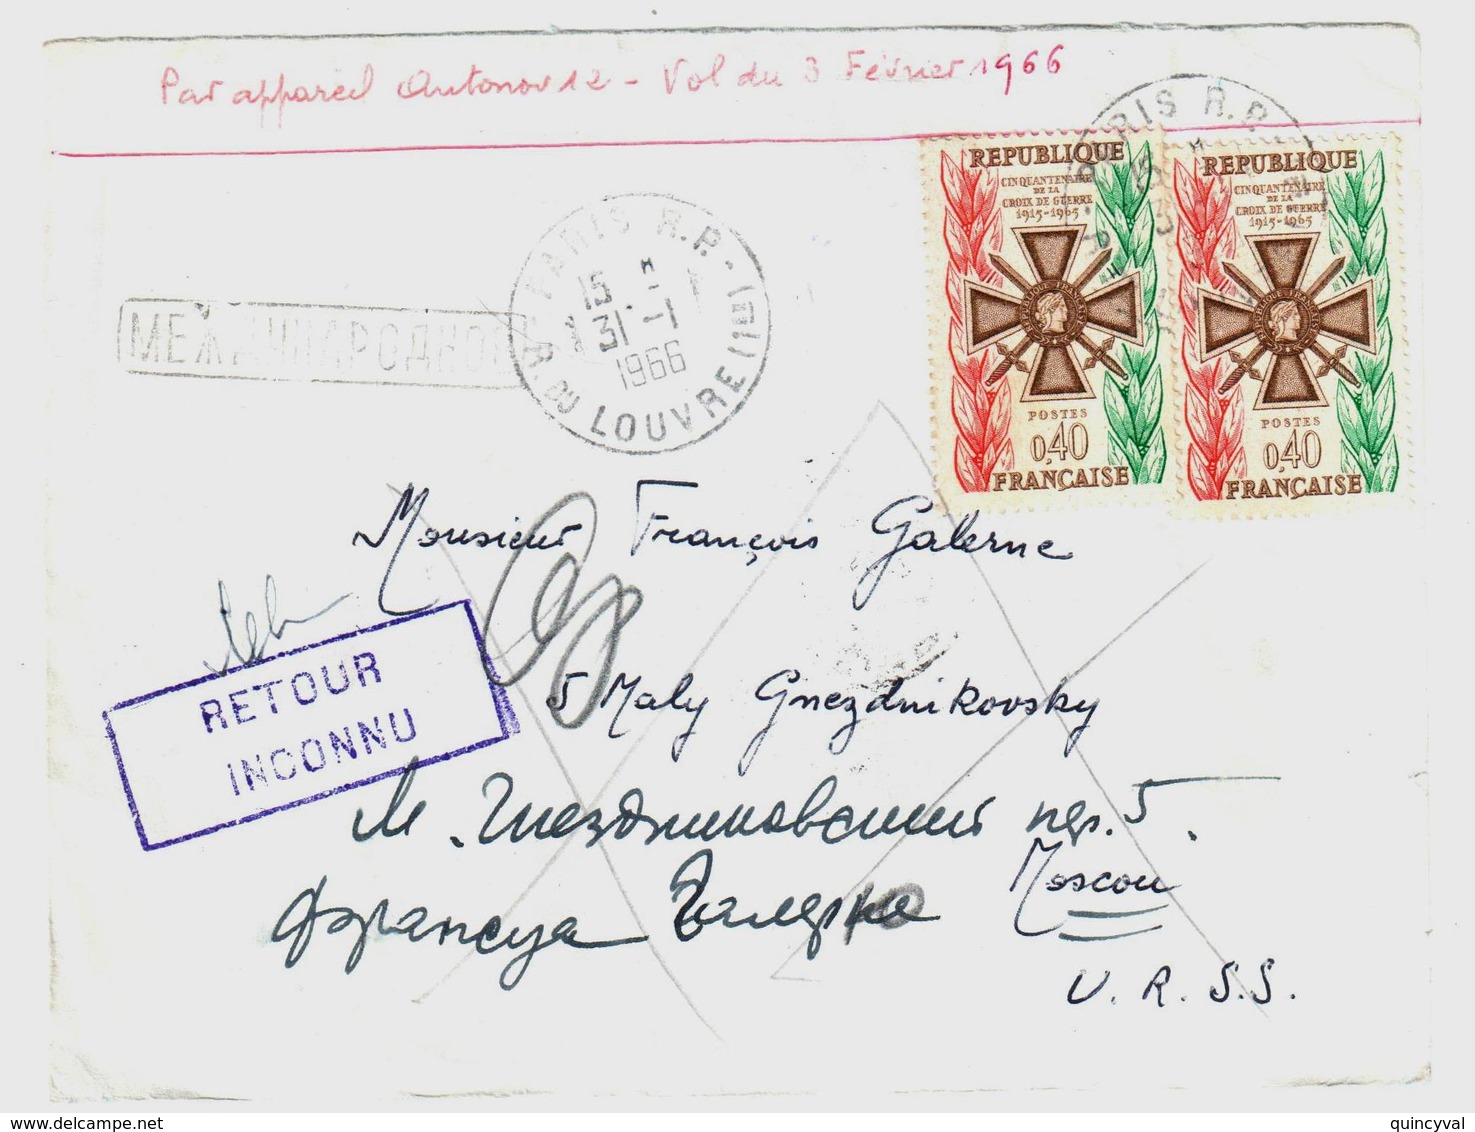 PARIS Lettre Dest Moscou URSS Russie Retour Envoyeur INCONNU 40c Croix De Guerre Yv 1452 Ob 31 1 1966 Verso MOCKBA - Covers & Documents